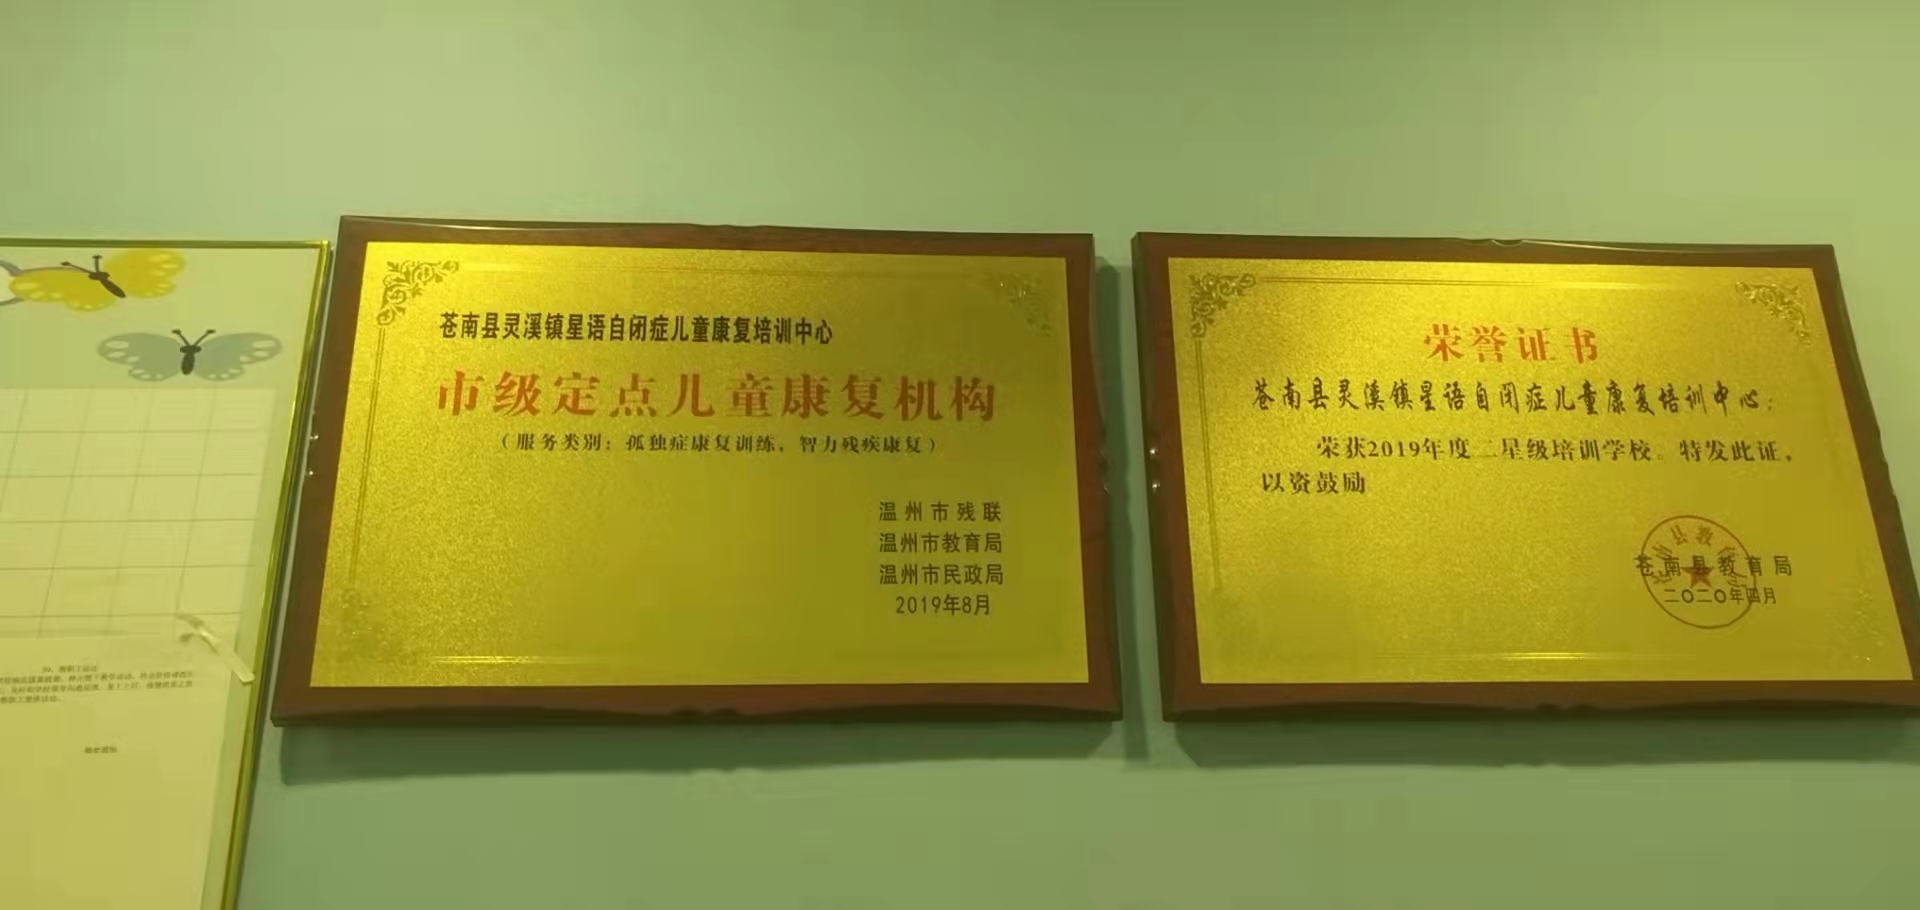 苍南县灵溪镇星语自闭症儿童康复培训中心